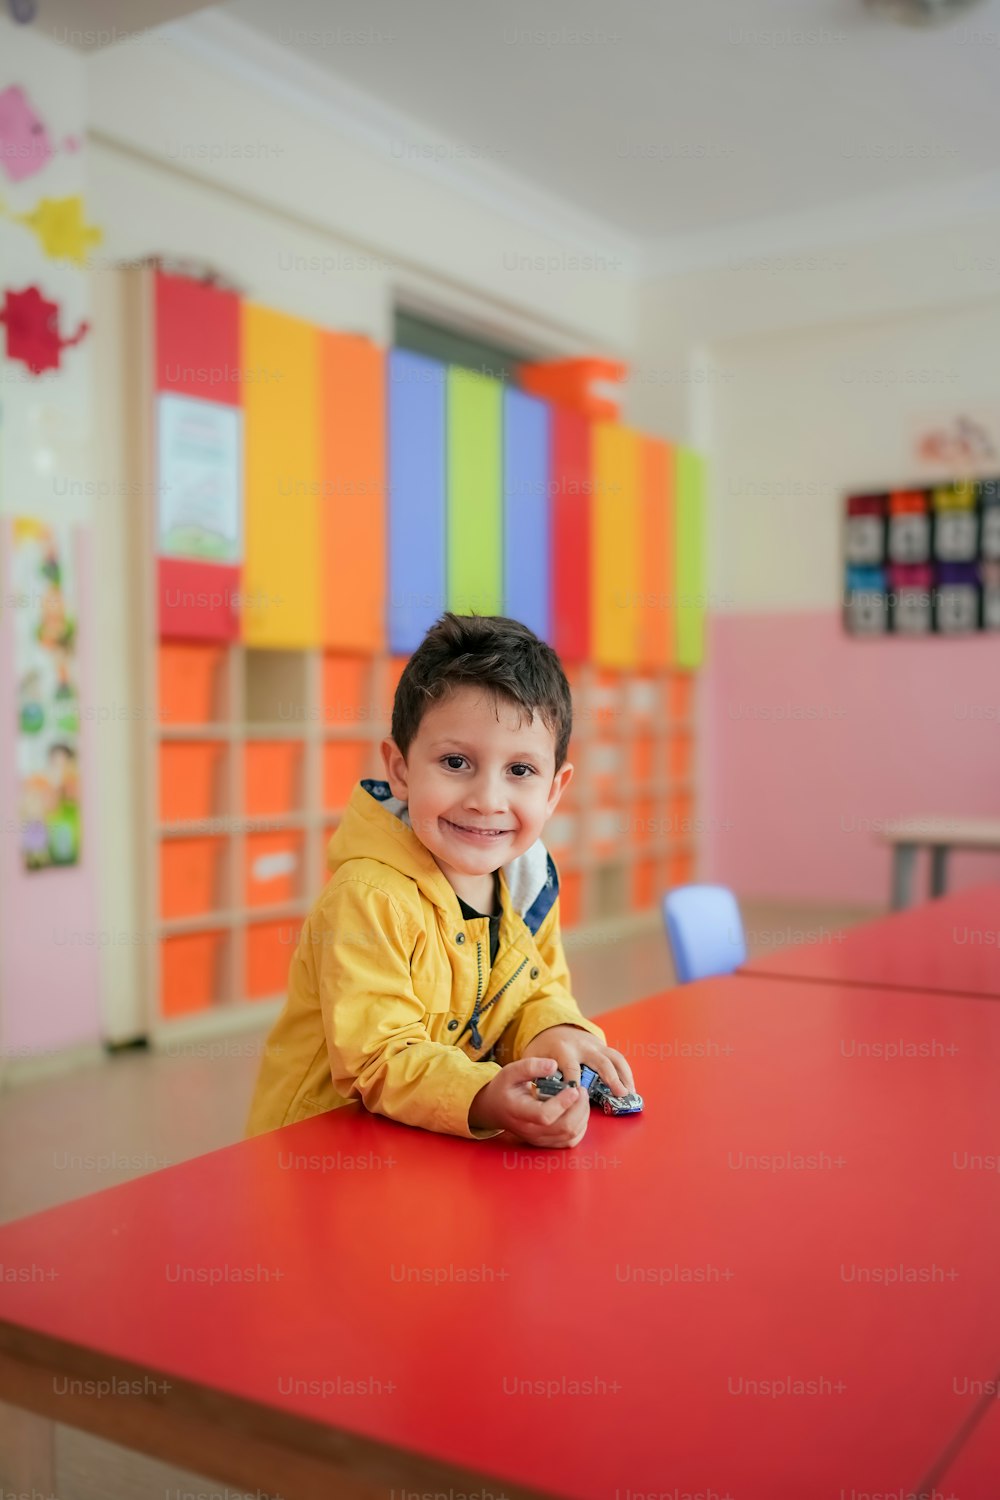 교실의 빨간 탁자에 앉아 있는 어린 소년